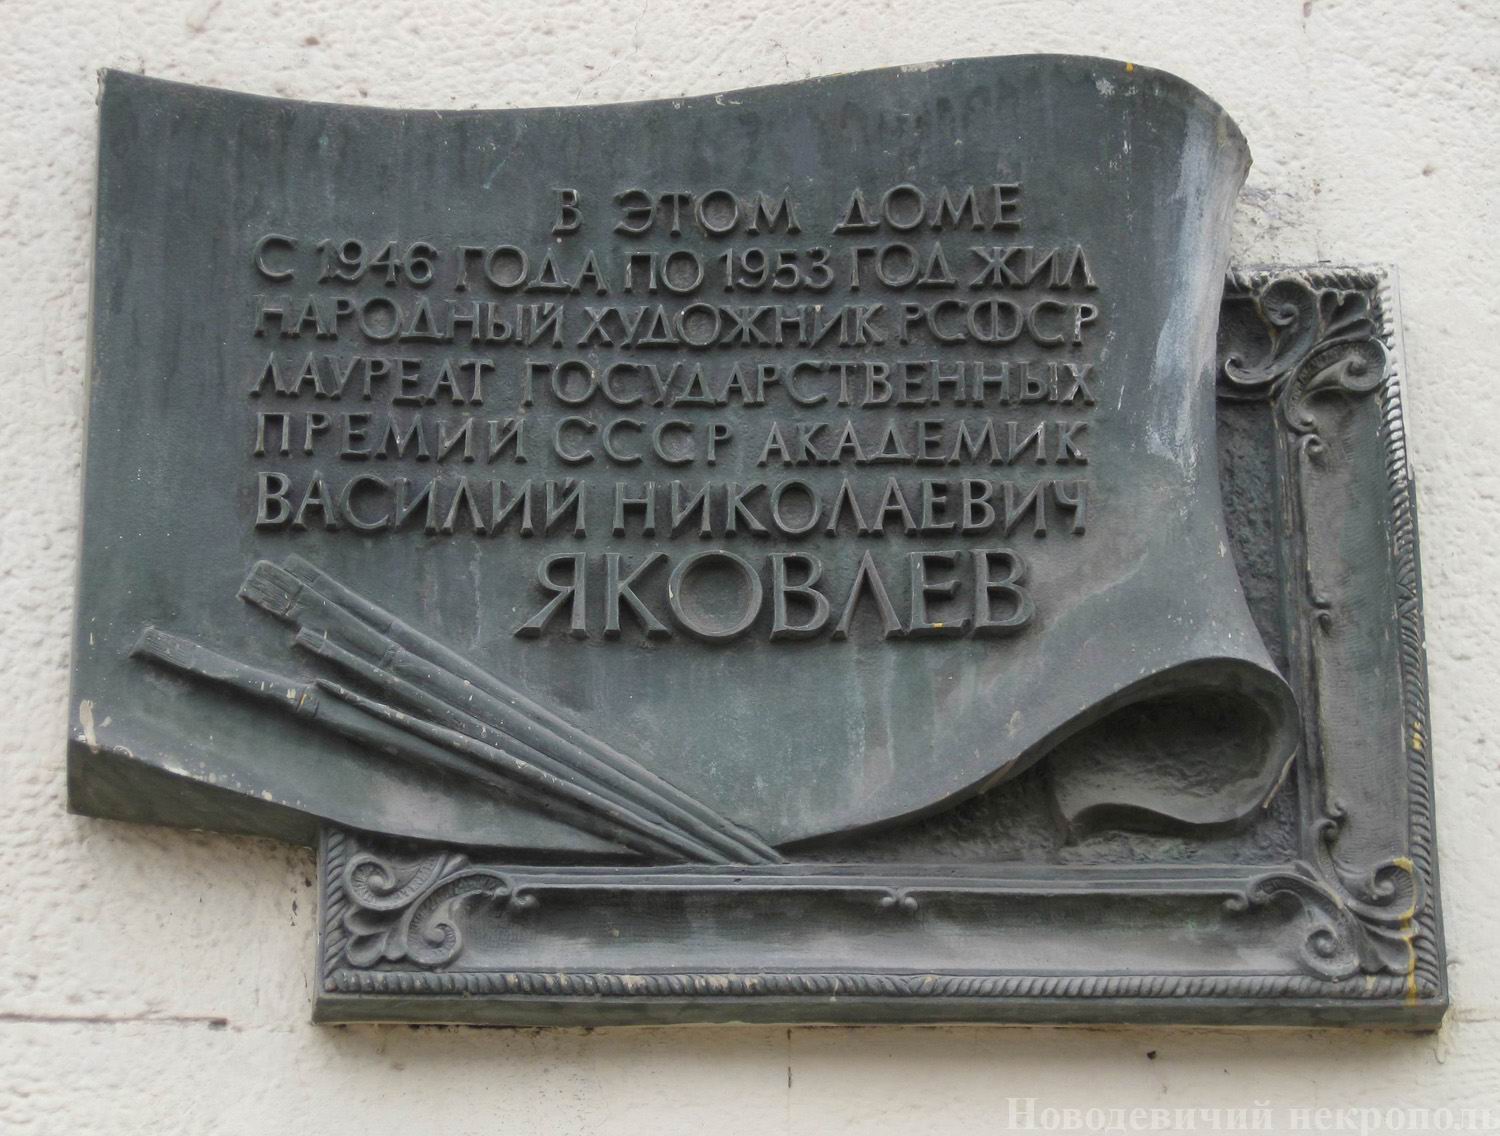 Мемориальная доска Яковлеву В.Н. (1893–1953), арх. М.Ф.Борисенко, на Кутузовском проспекте, дом 23, корпус 1, открыта 18.3.1983.